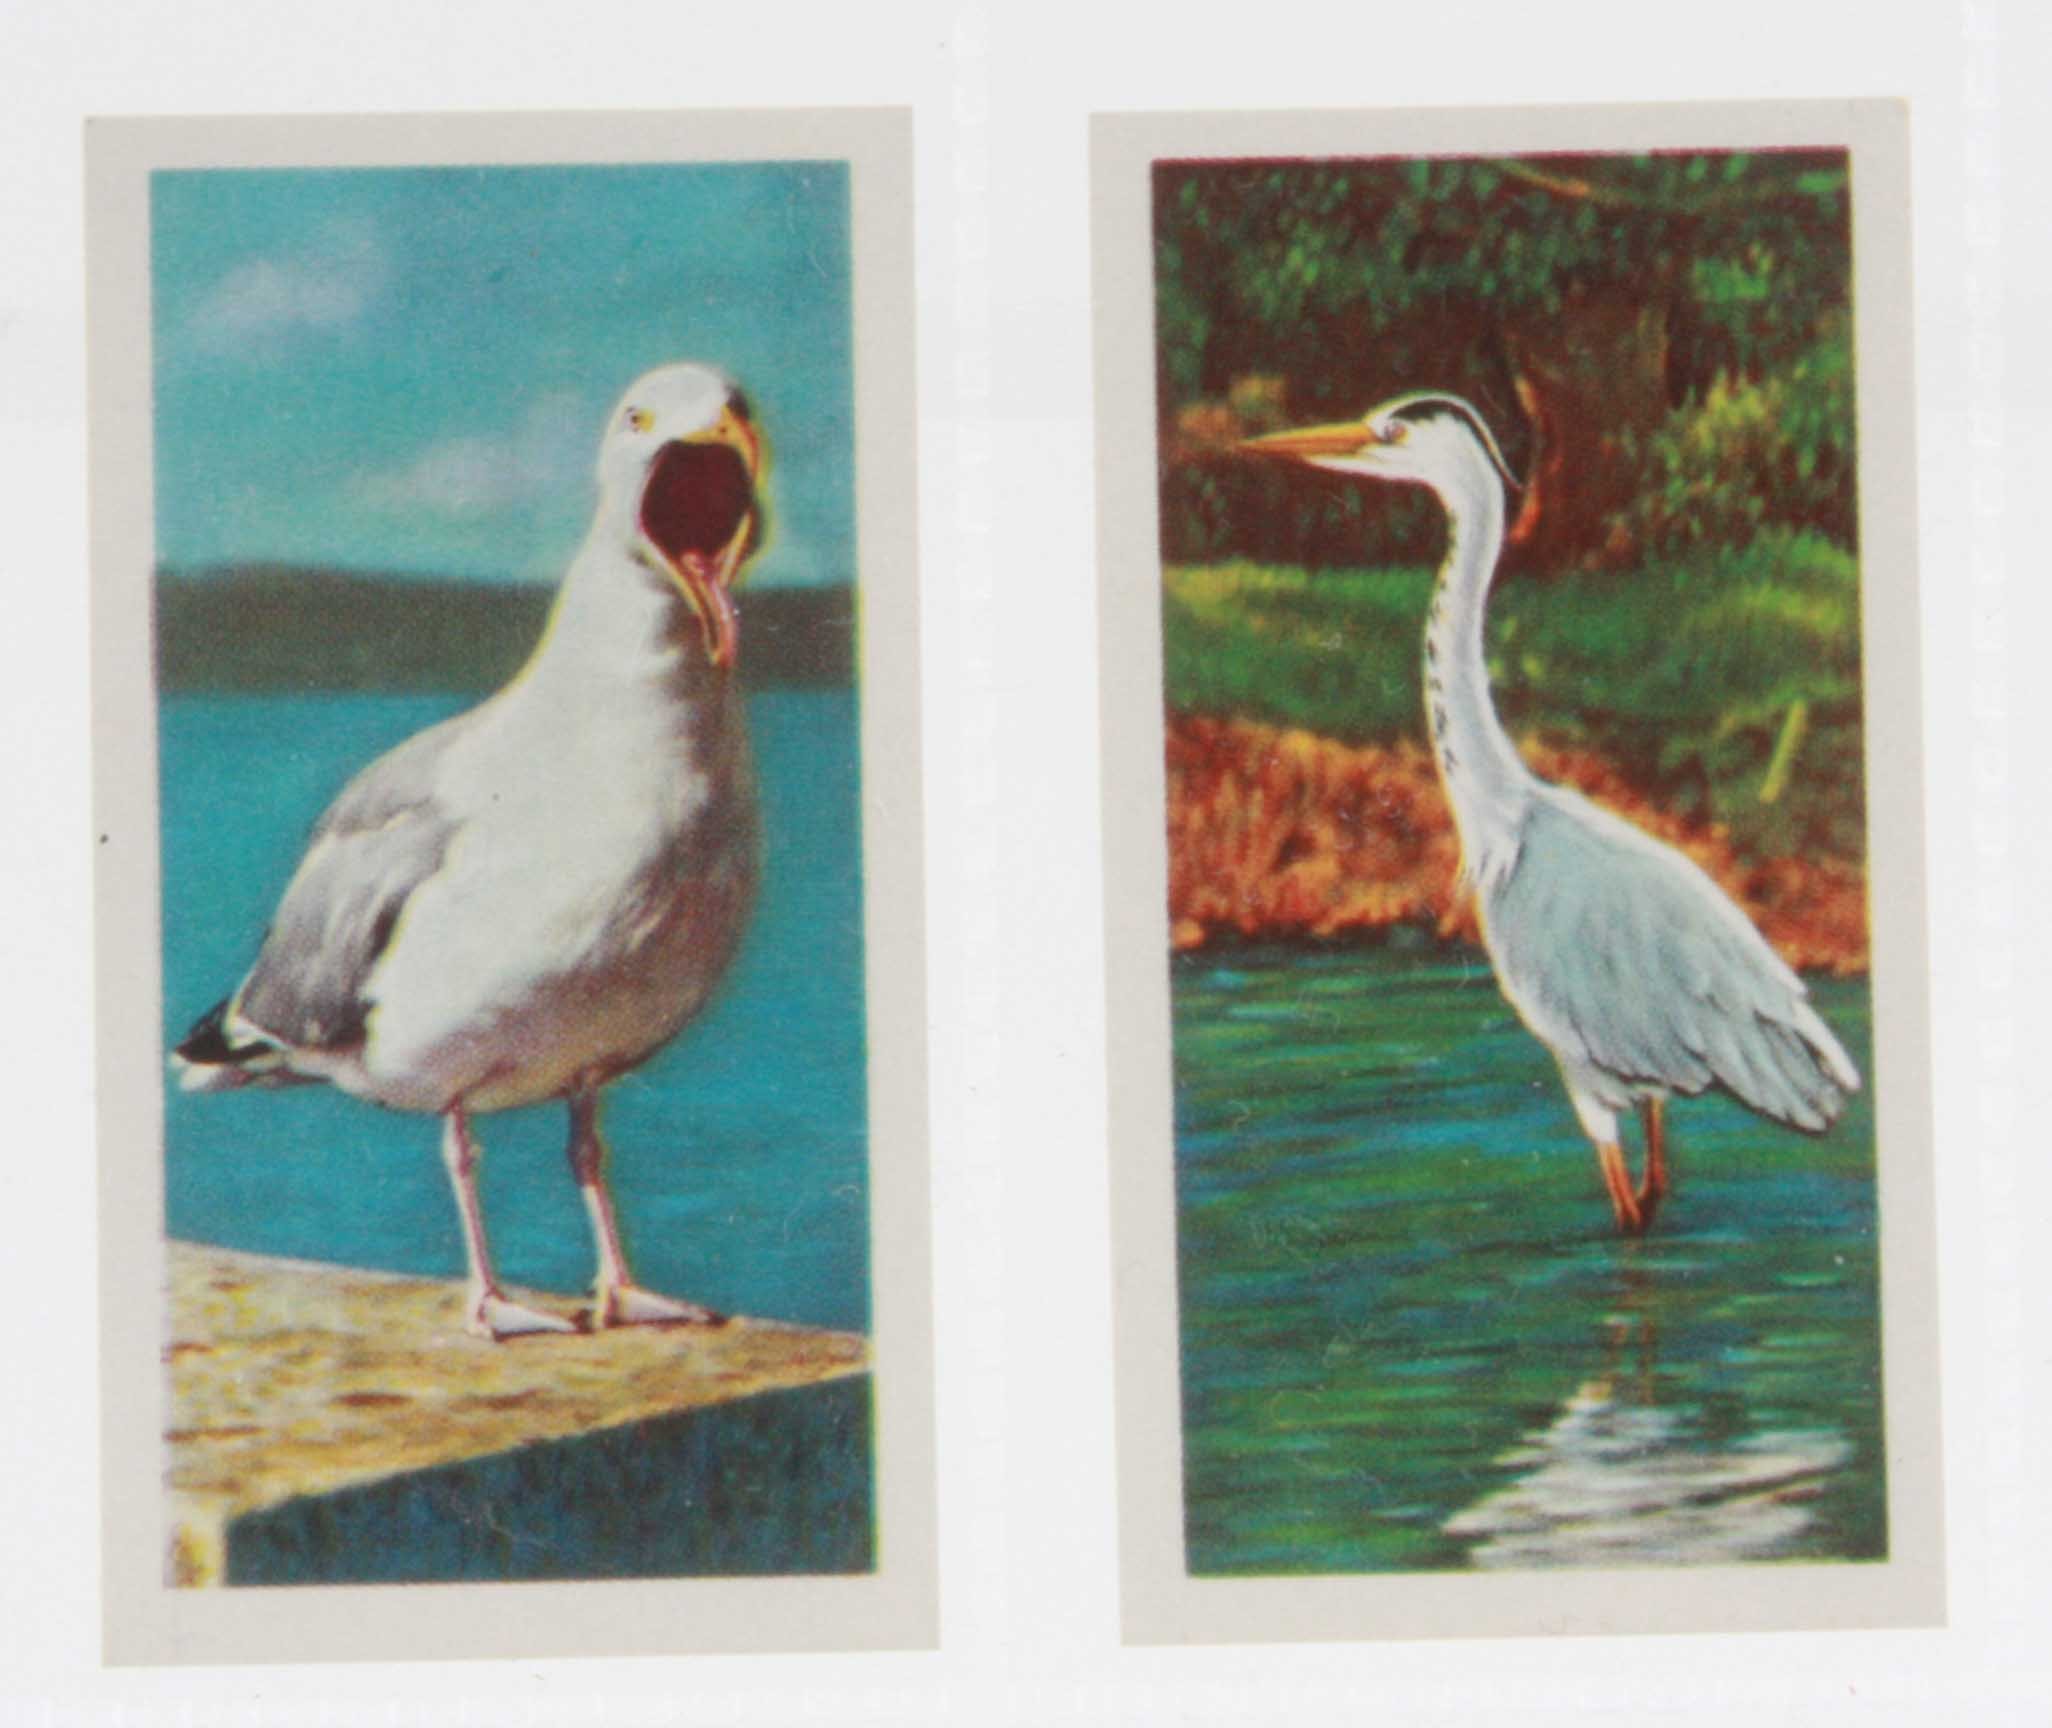 Trade cards, Brooke Bond, British Birds, Frances Pitt Series (set, 20 cards) (no 11 with very slight